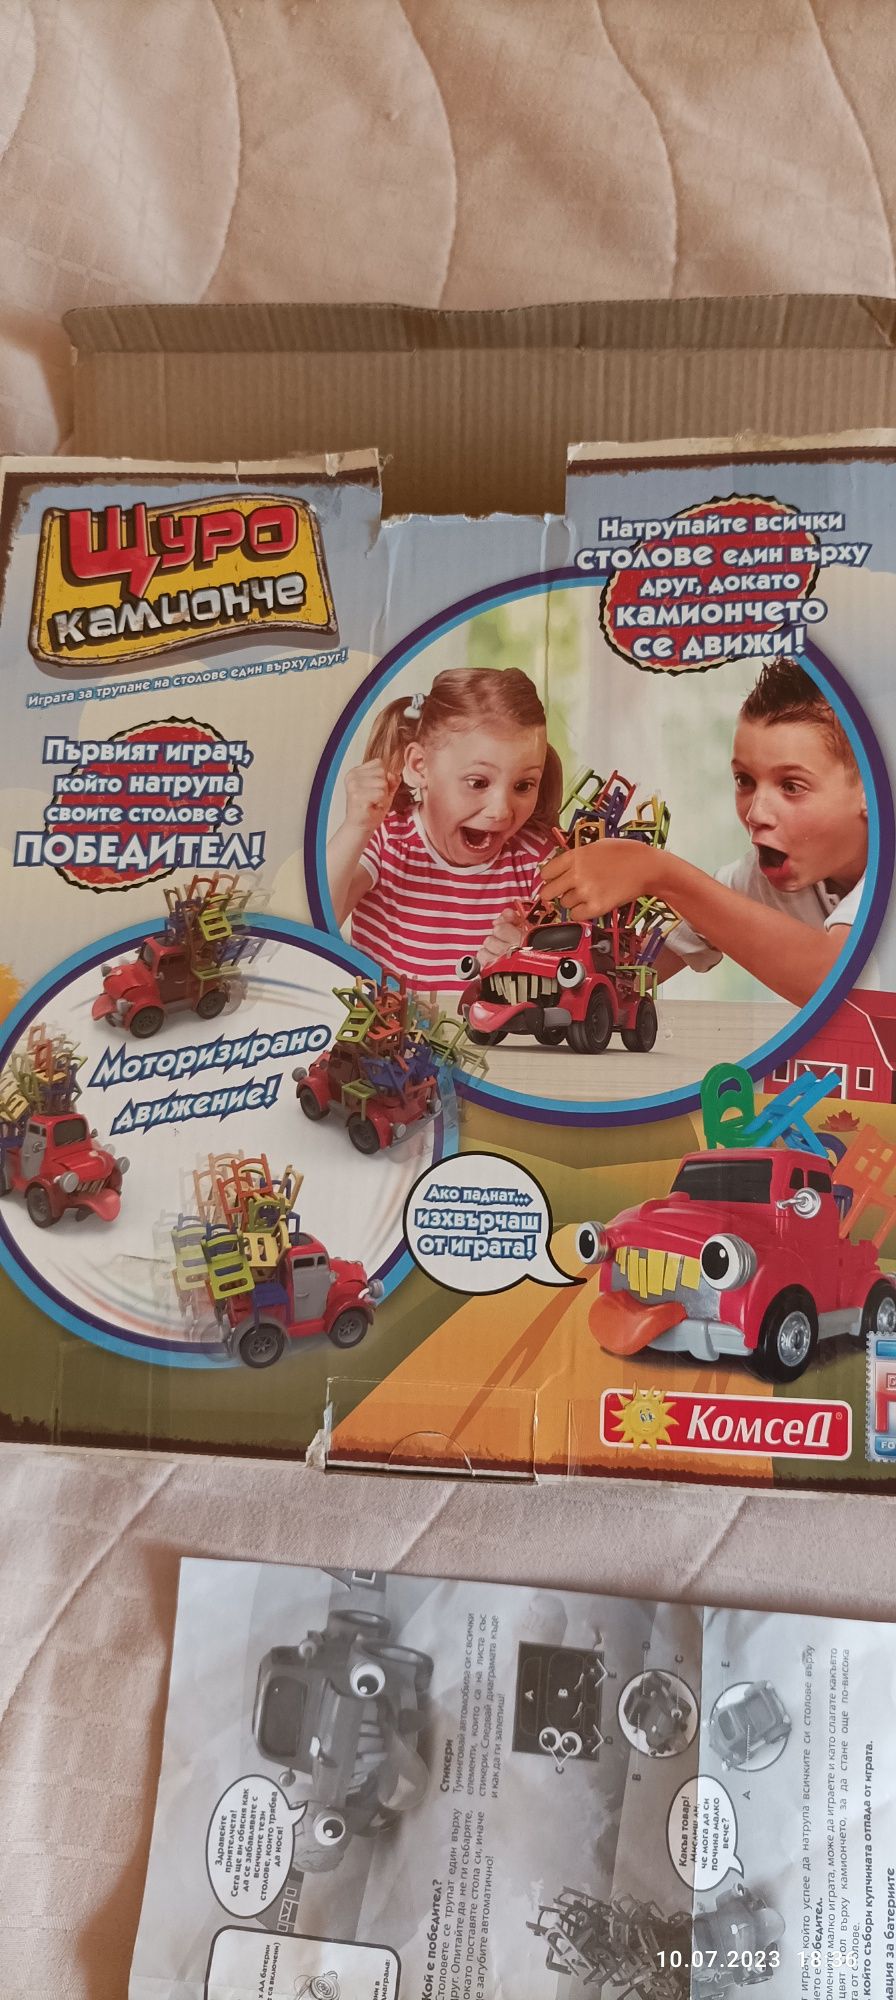 Детска игра Щуро камионче